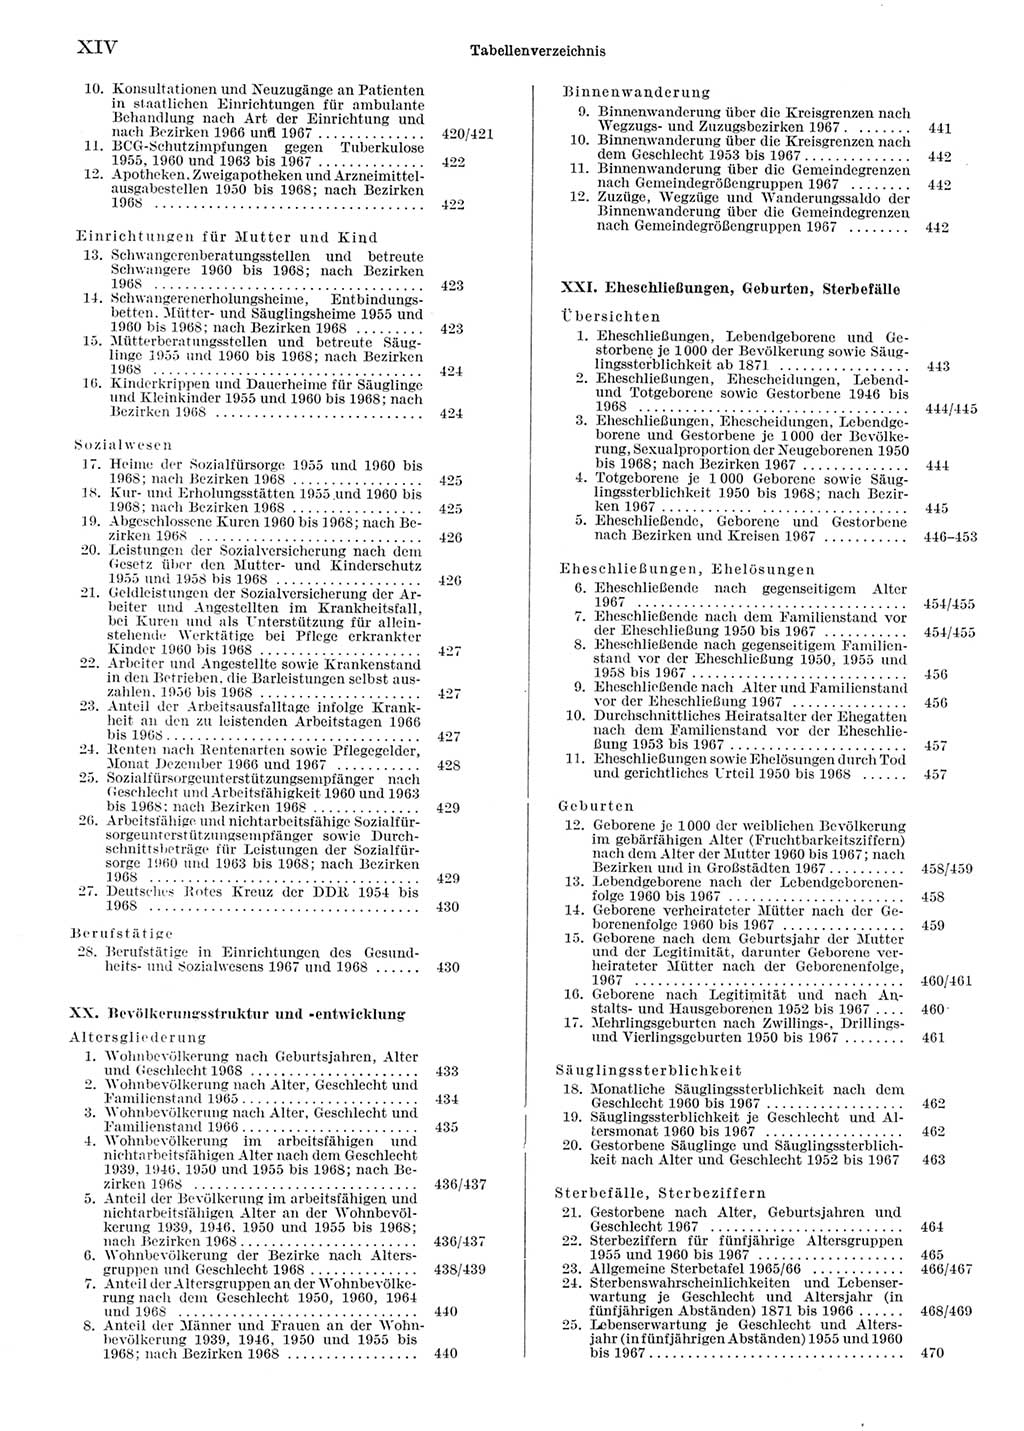 Statistisches Jahrbuch der Deutschen Demokratischen Republik (DDR) 1969, Seite 14 (Stat. Jb. DDR 1969, S. 14)